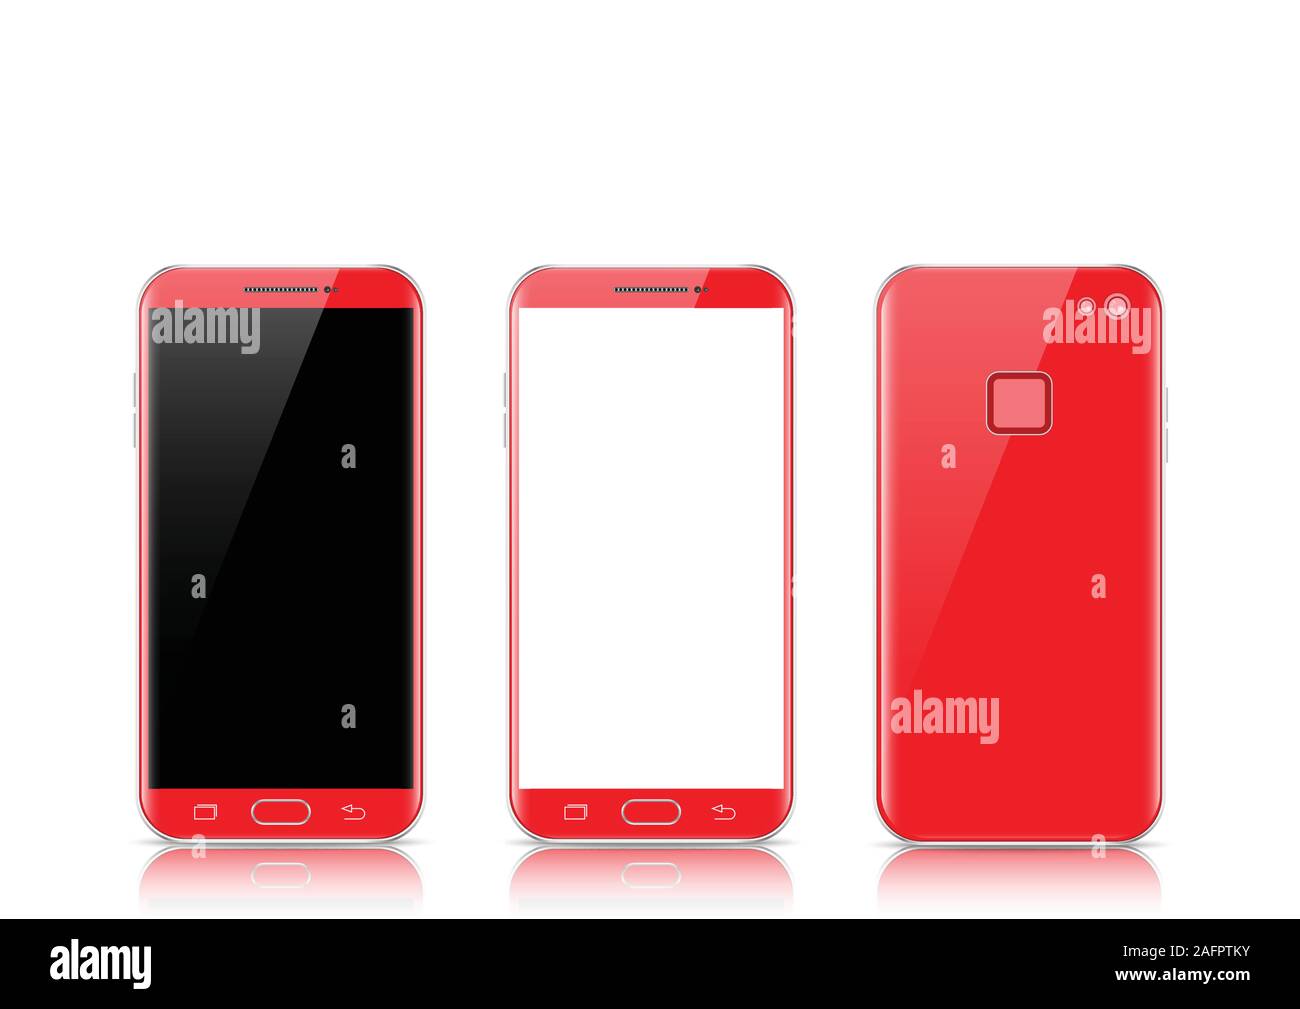 Modernes rotes Touchscreen Handy tablet Smartphone auf hellen Hintergrund isoliert. Telefon Vorder- und Rückseite getrennt. Vector Illustration. Stock Vektor